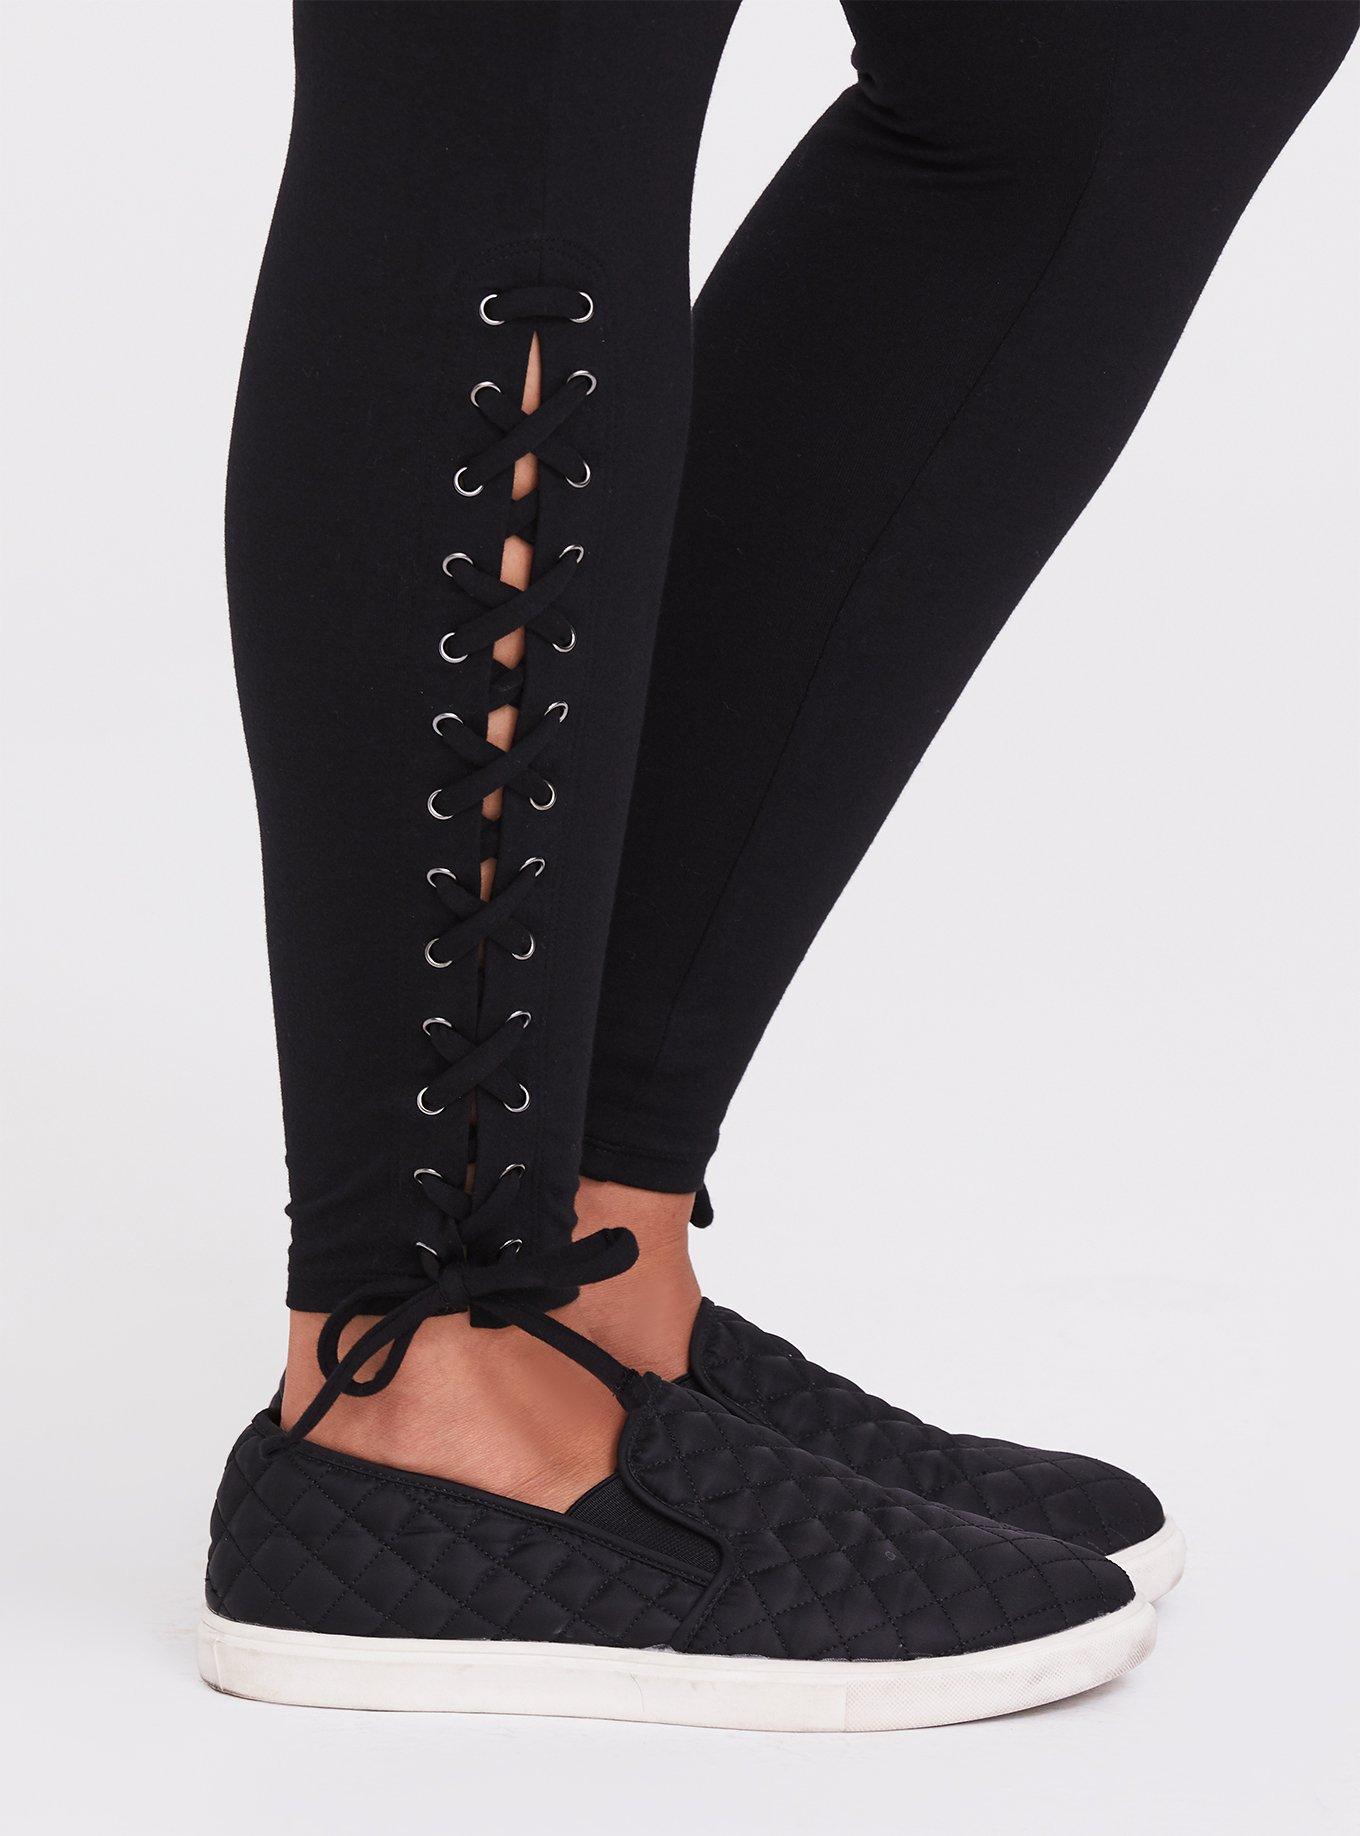 Plus Size - Premium Legging - Self Tie Lace-Up Black - Torrid